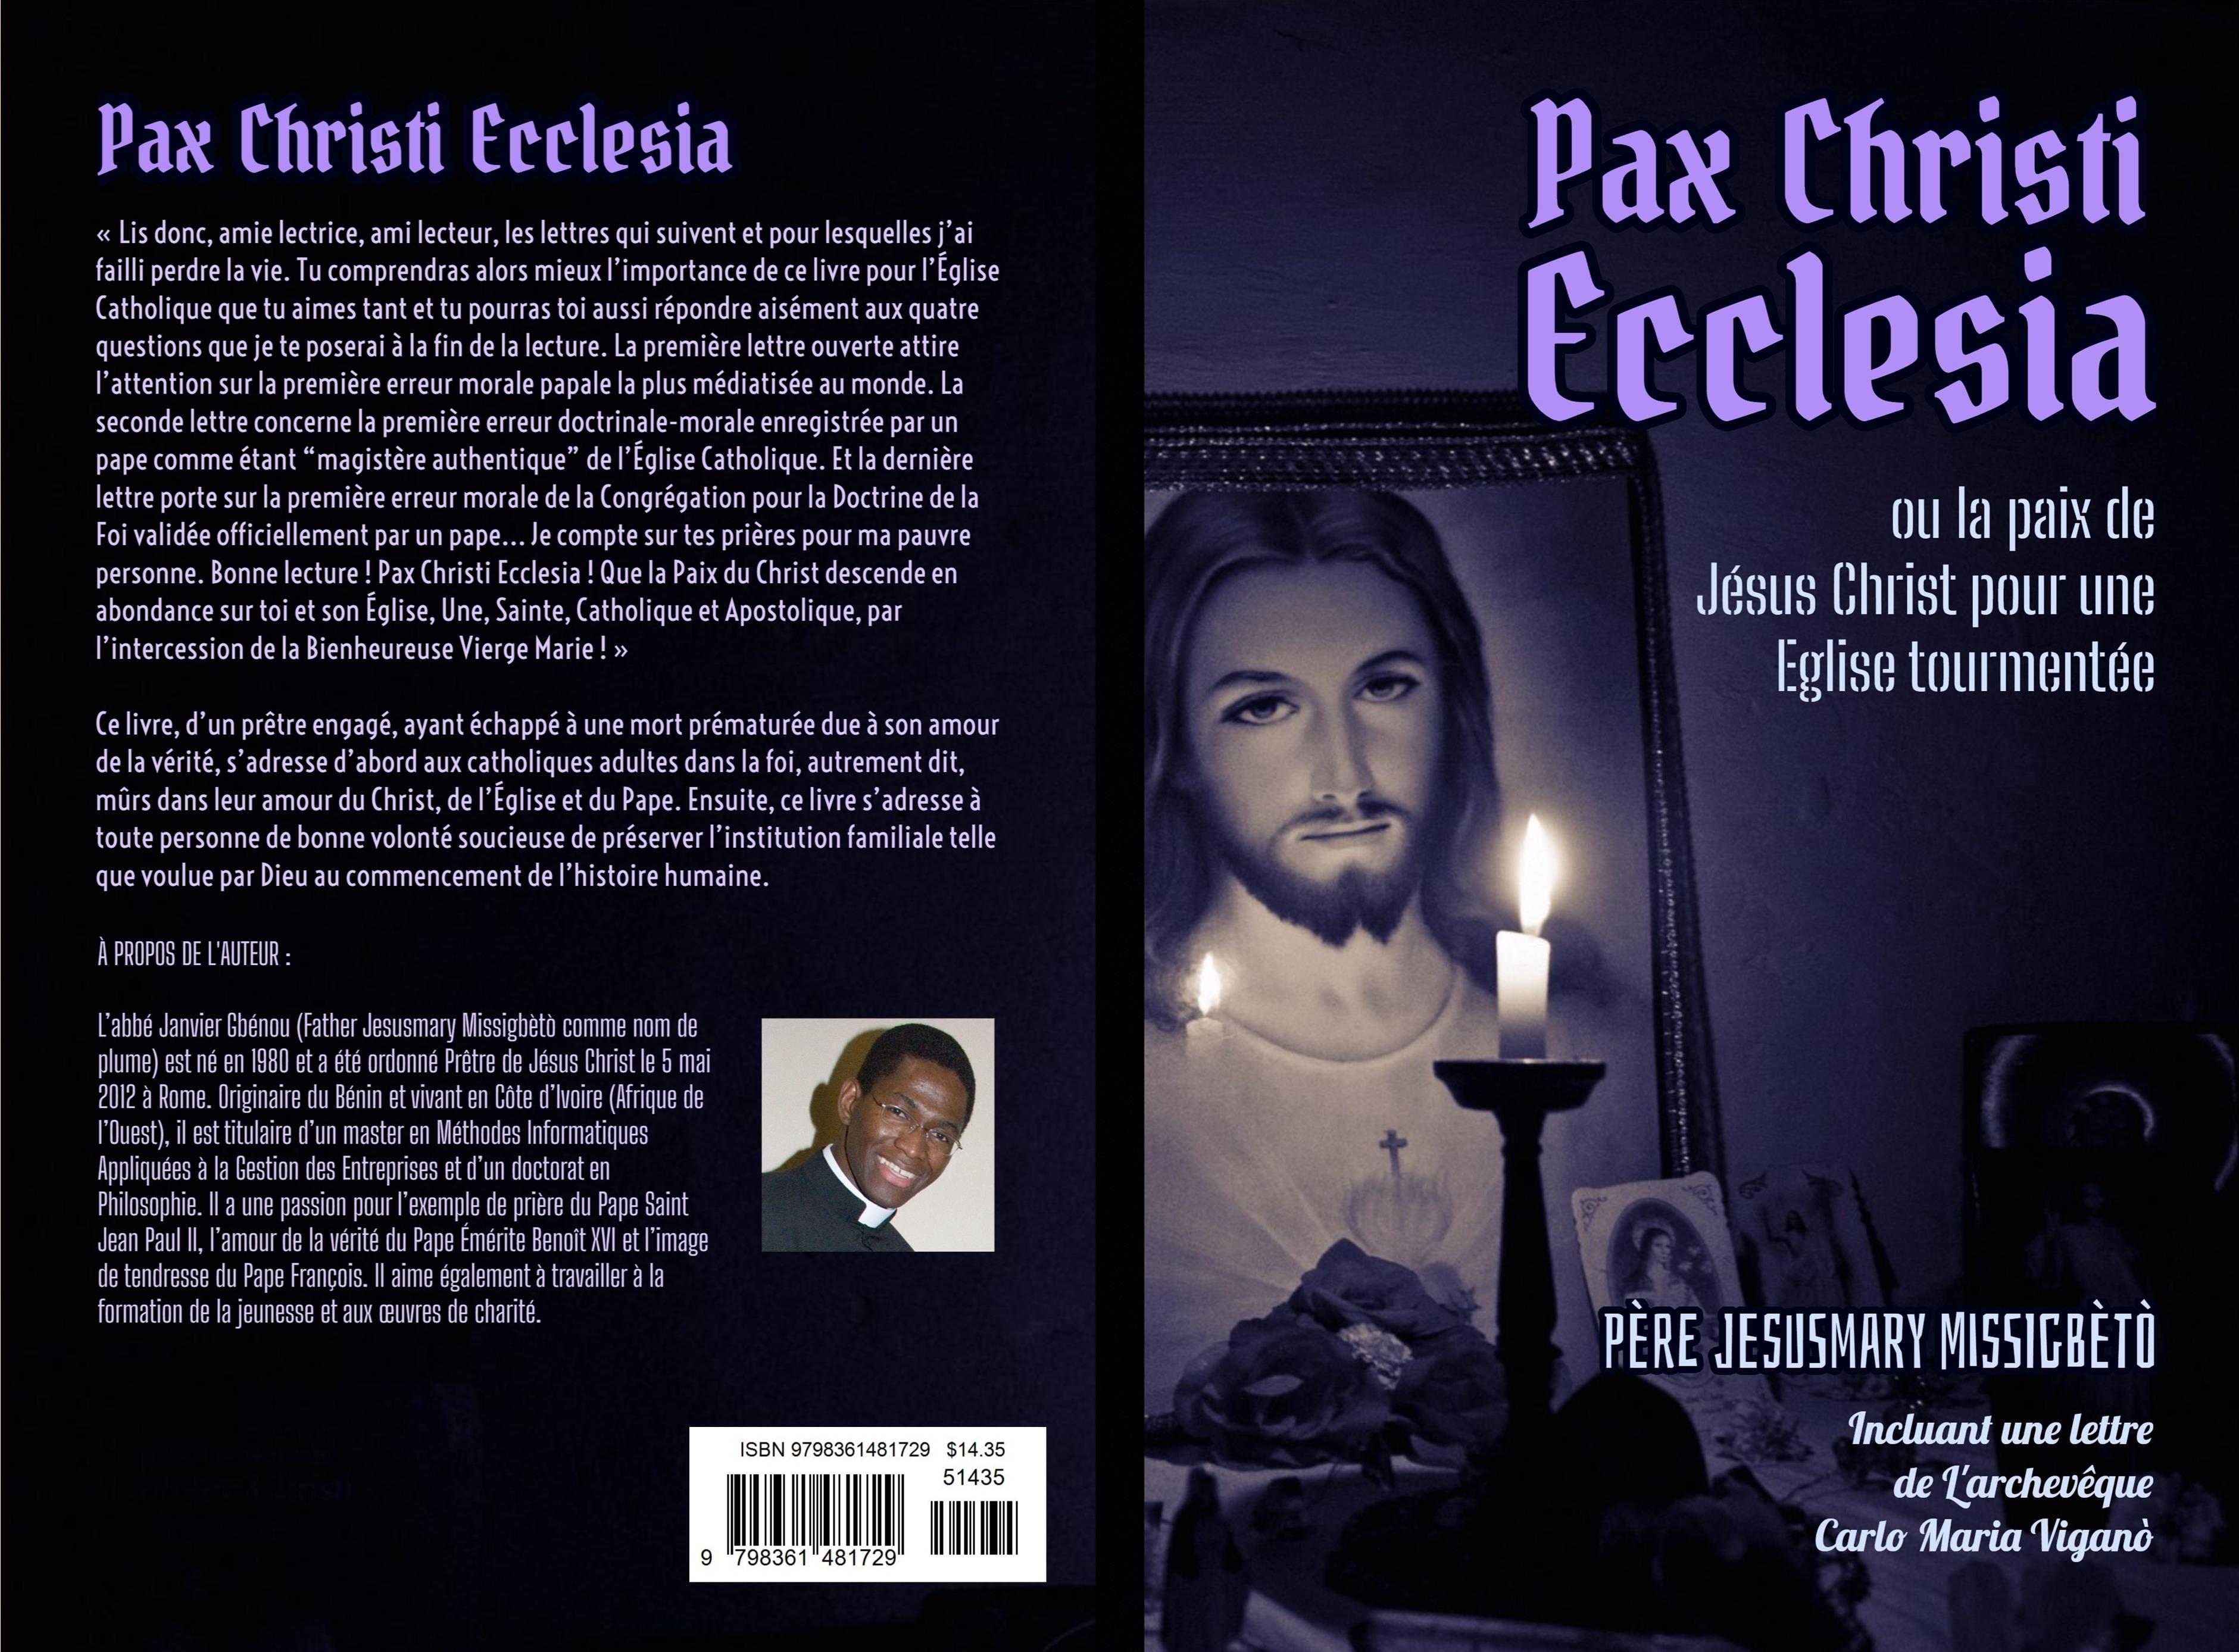 Pax Christi Ecclesia (ou la paix de Jésus Christ pour une Église tourmentée) cover image